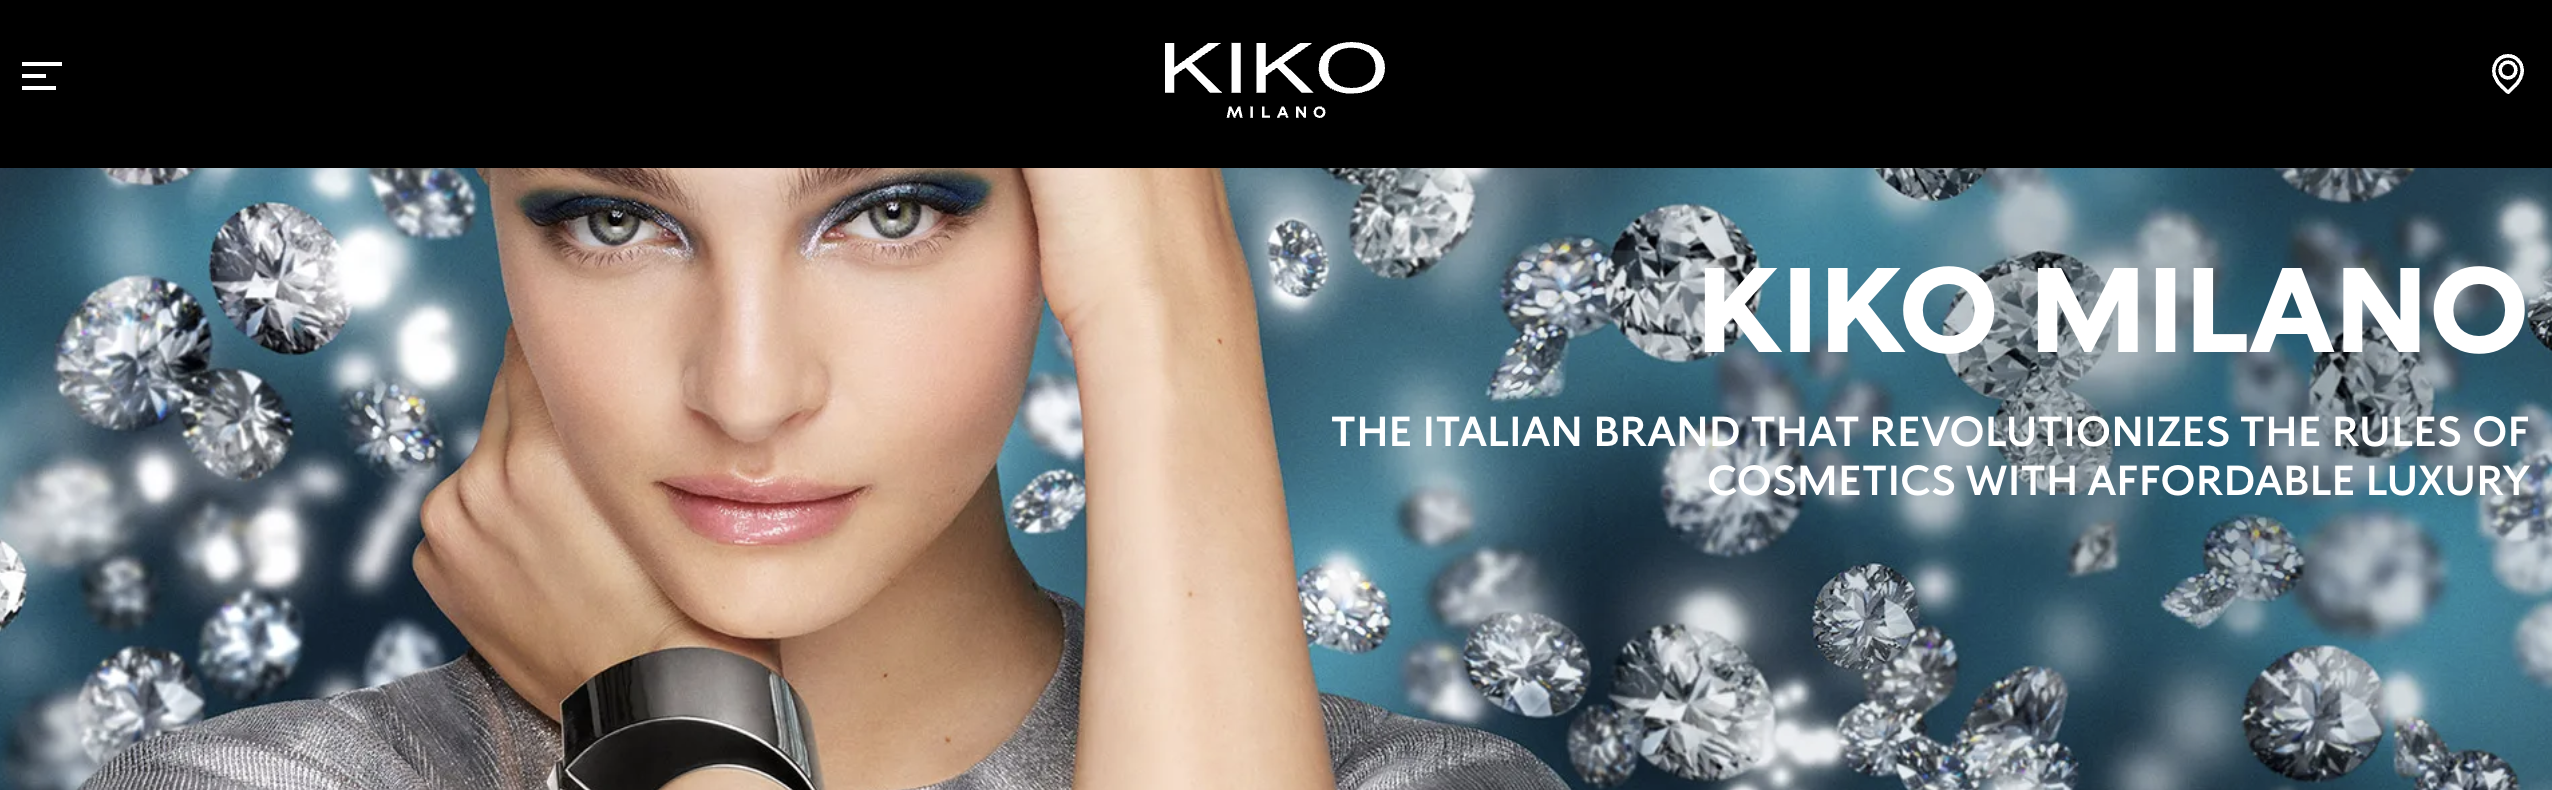 传：意大利美妆品牌 Kiko 或以20亿欧元的估值被出售